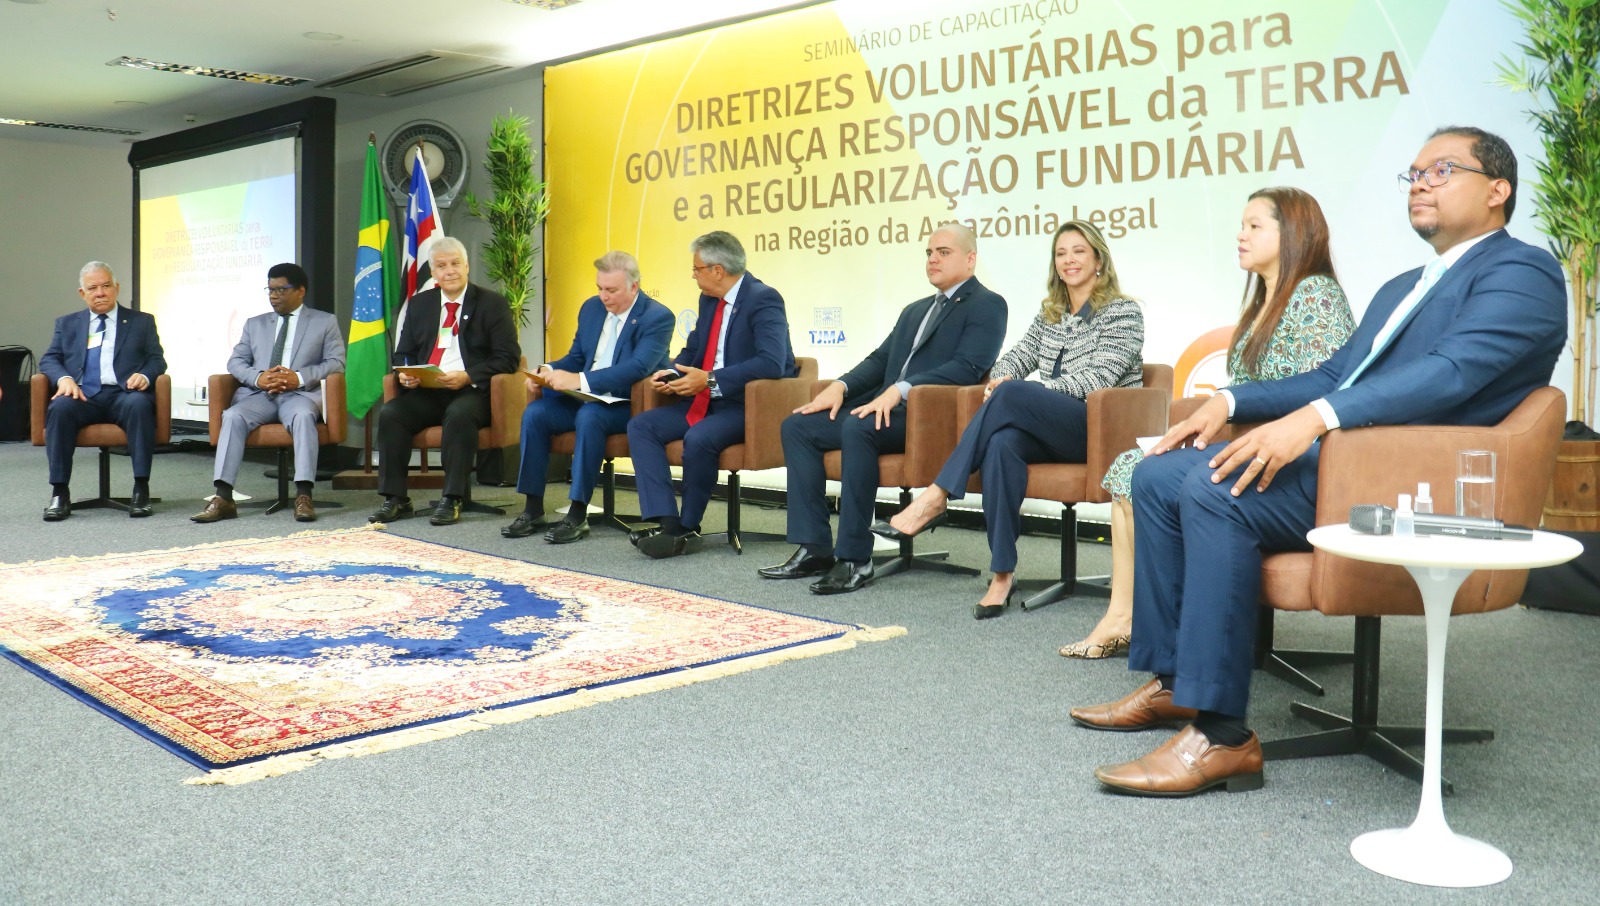 Foto de seis pessoas sentadas e atrás o banner do evento "Seminário Nacional para Governança Responsável da Terra"